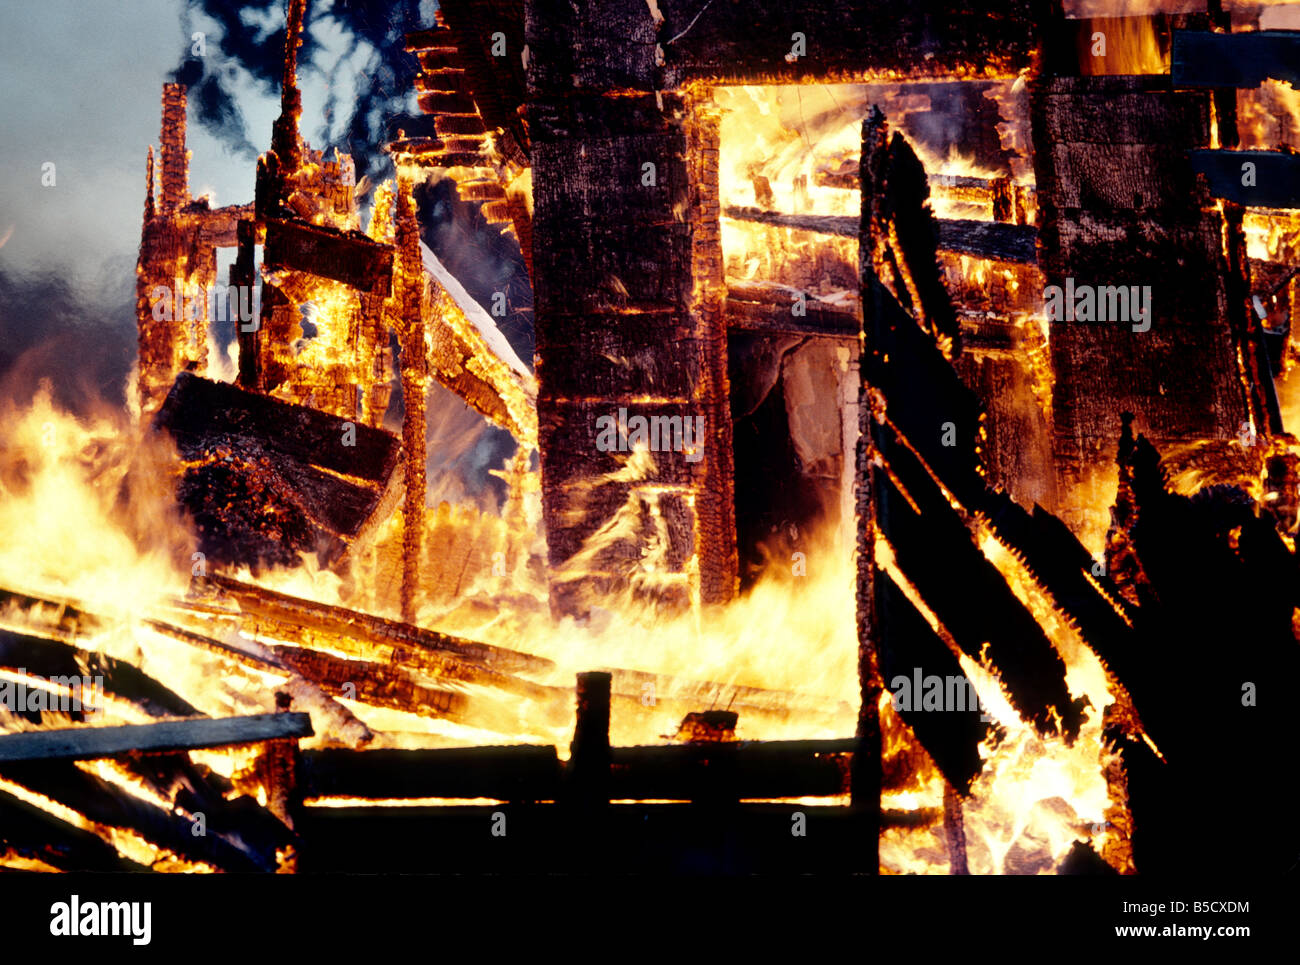 Inferno, Flammen verbrauchen Holzstruktur nach Hause. Stockfoto